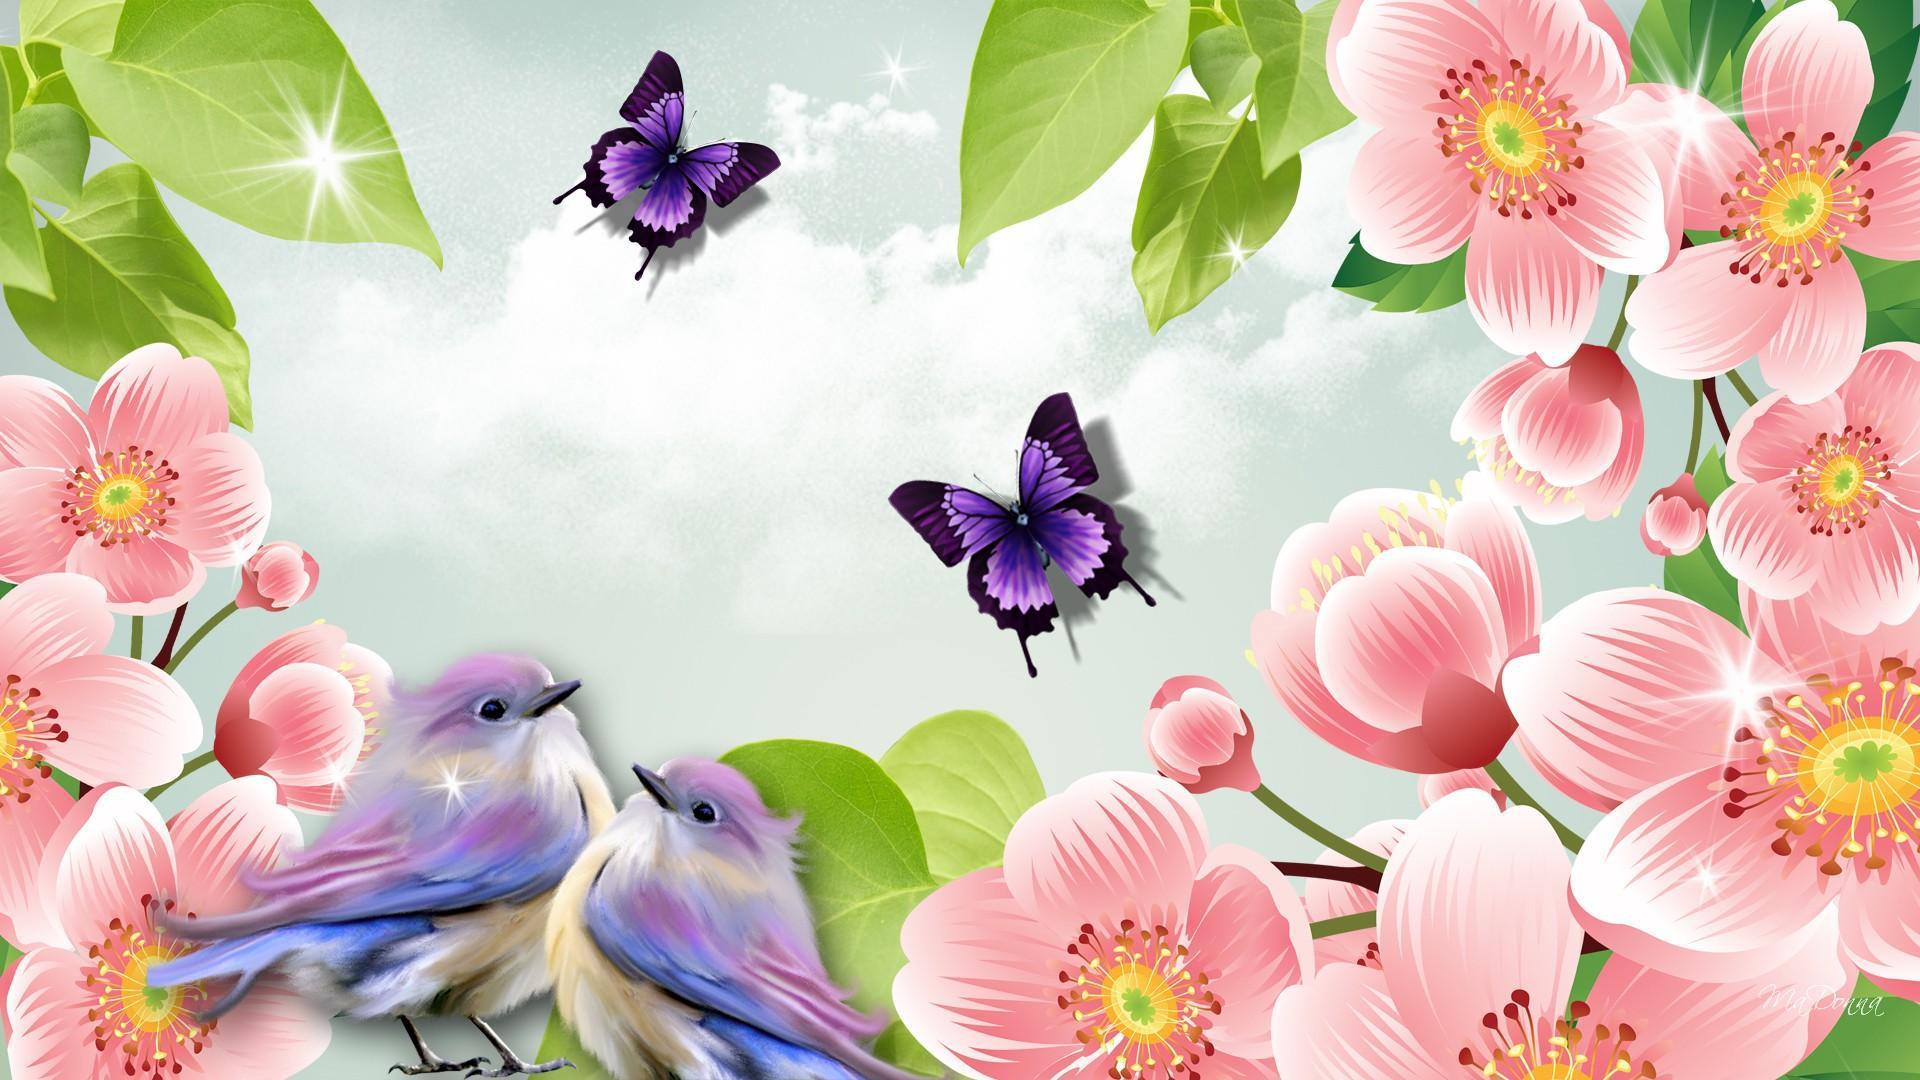 Spring Summer HD desktop wallpaper, Widescreen, High Definition